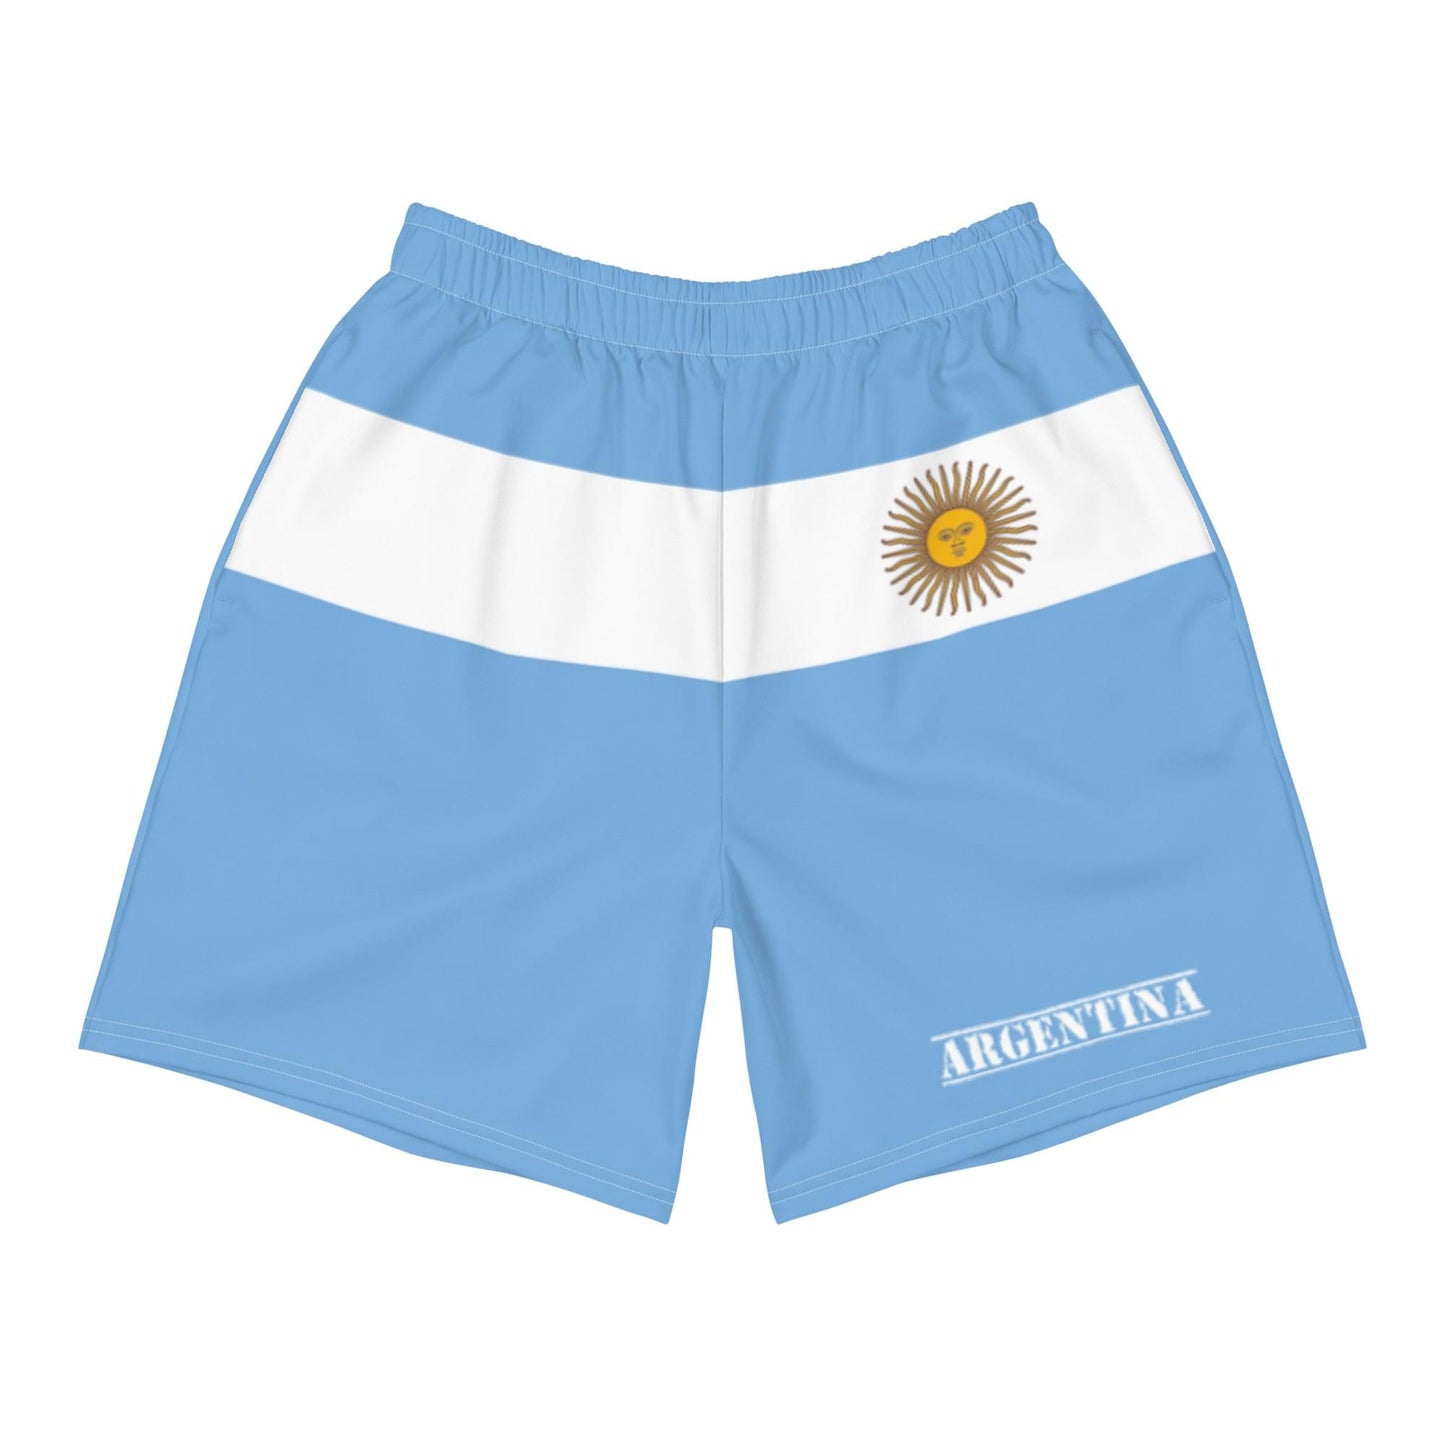 Pantaloncini Argentina da uomo / Stile di abbigliamento argentino / Poliestere riciclato